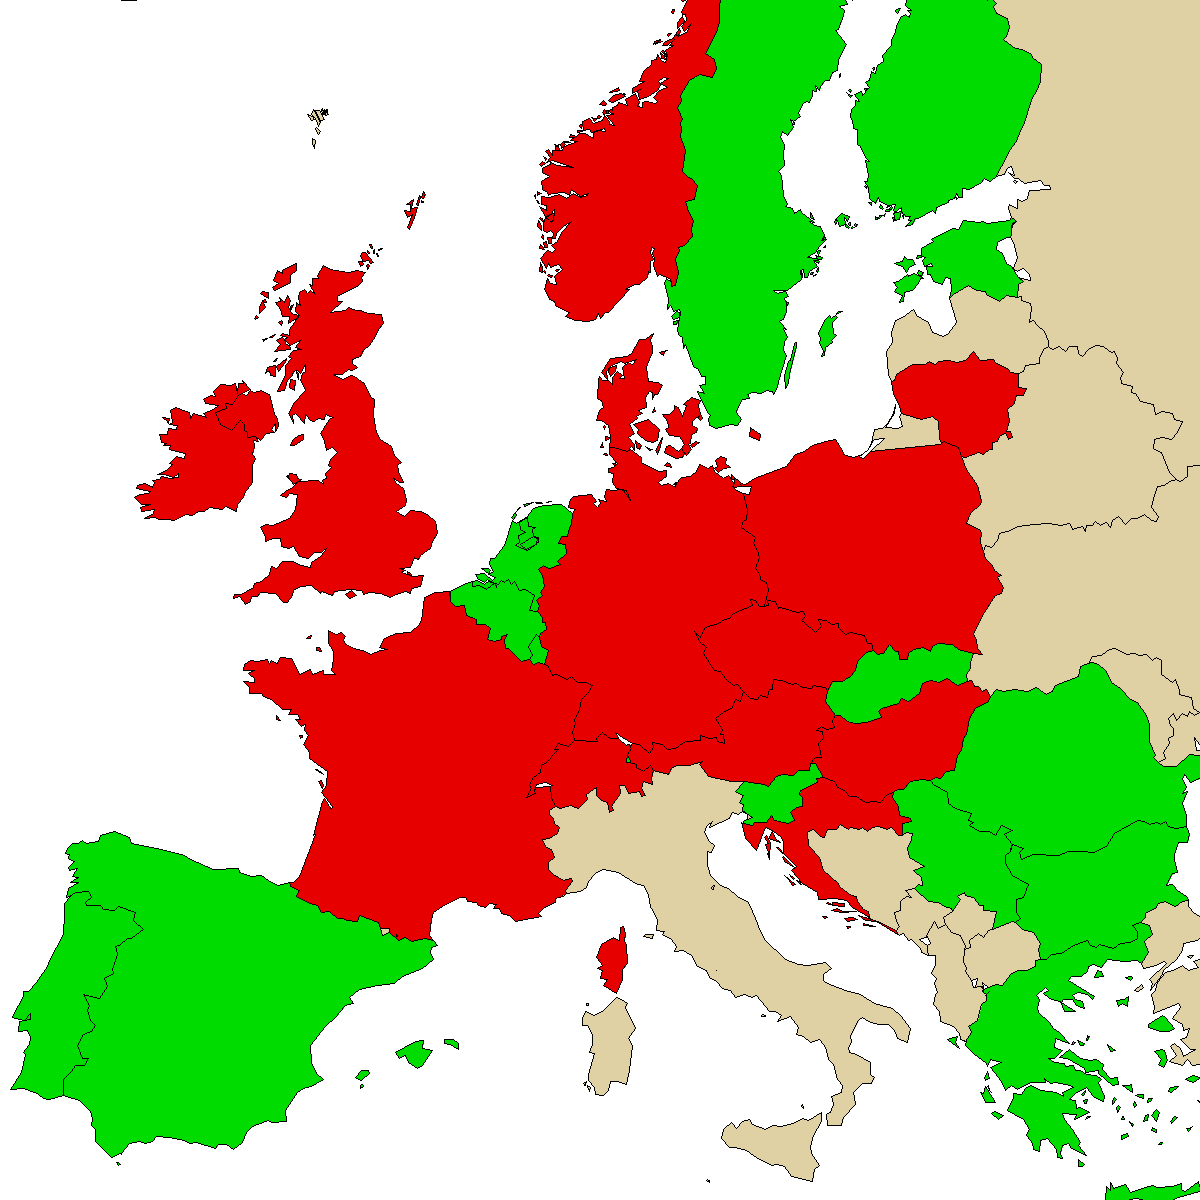 mapa de información legal para nuestro producto a-PiHP, verde son países sin prohibición, rojo con prohibición, gris se desconoce